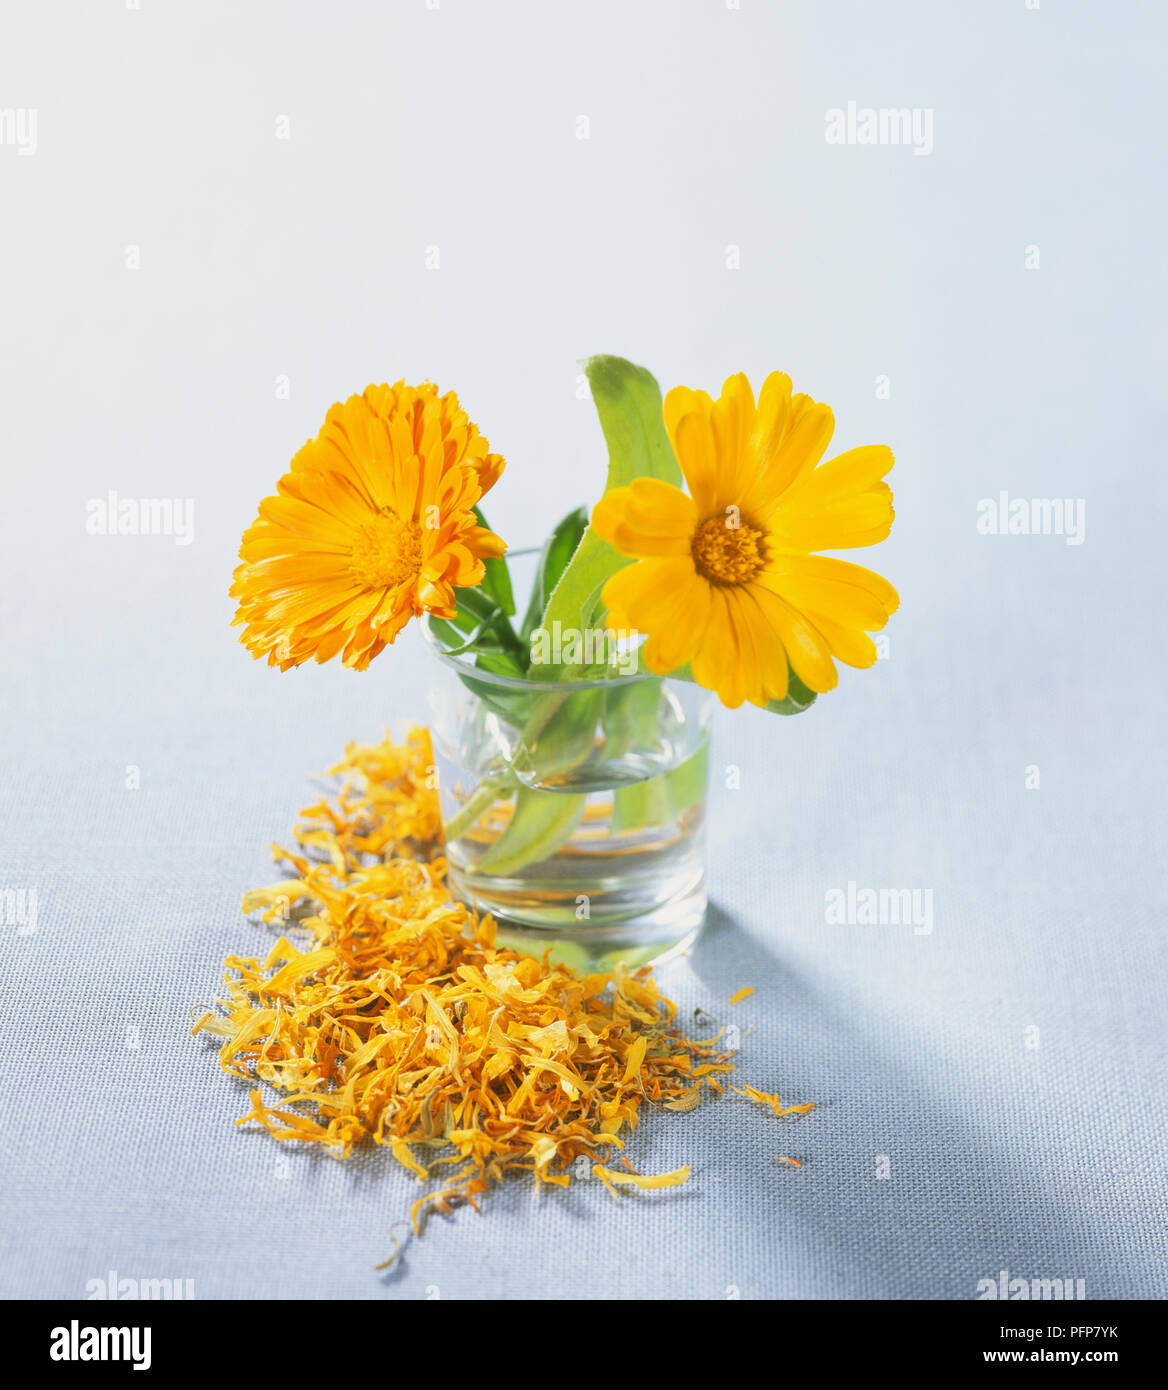 Calendula offocinalis, Pot marigold Blumen in Wasser, getrocknete Blütenblätter um ihn herum verstreut. Stockfoto